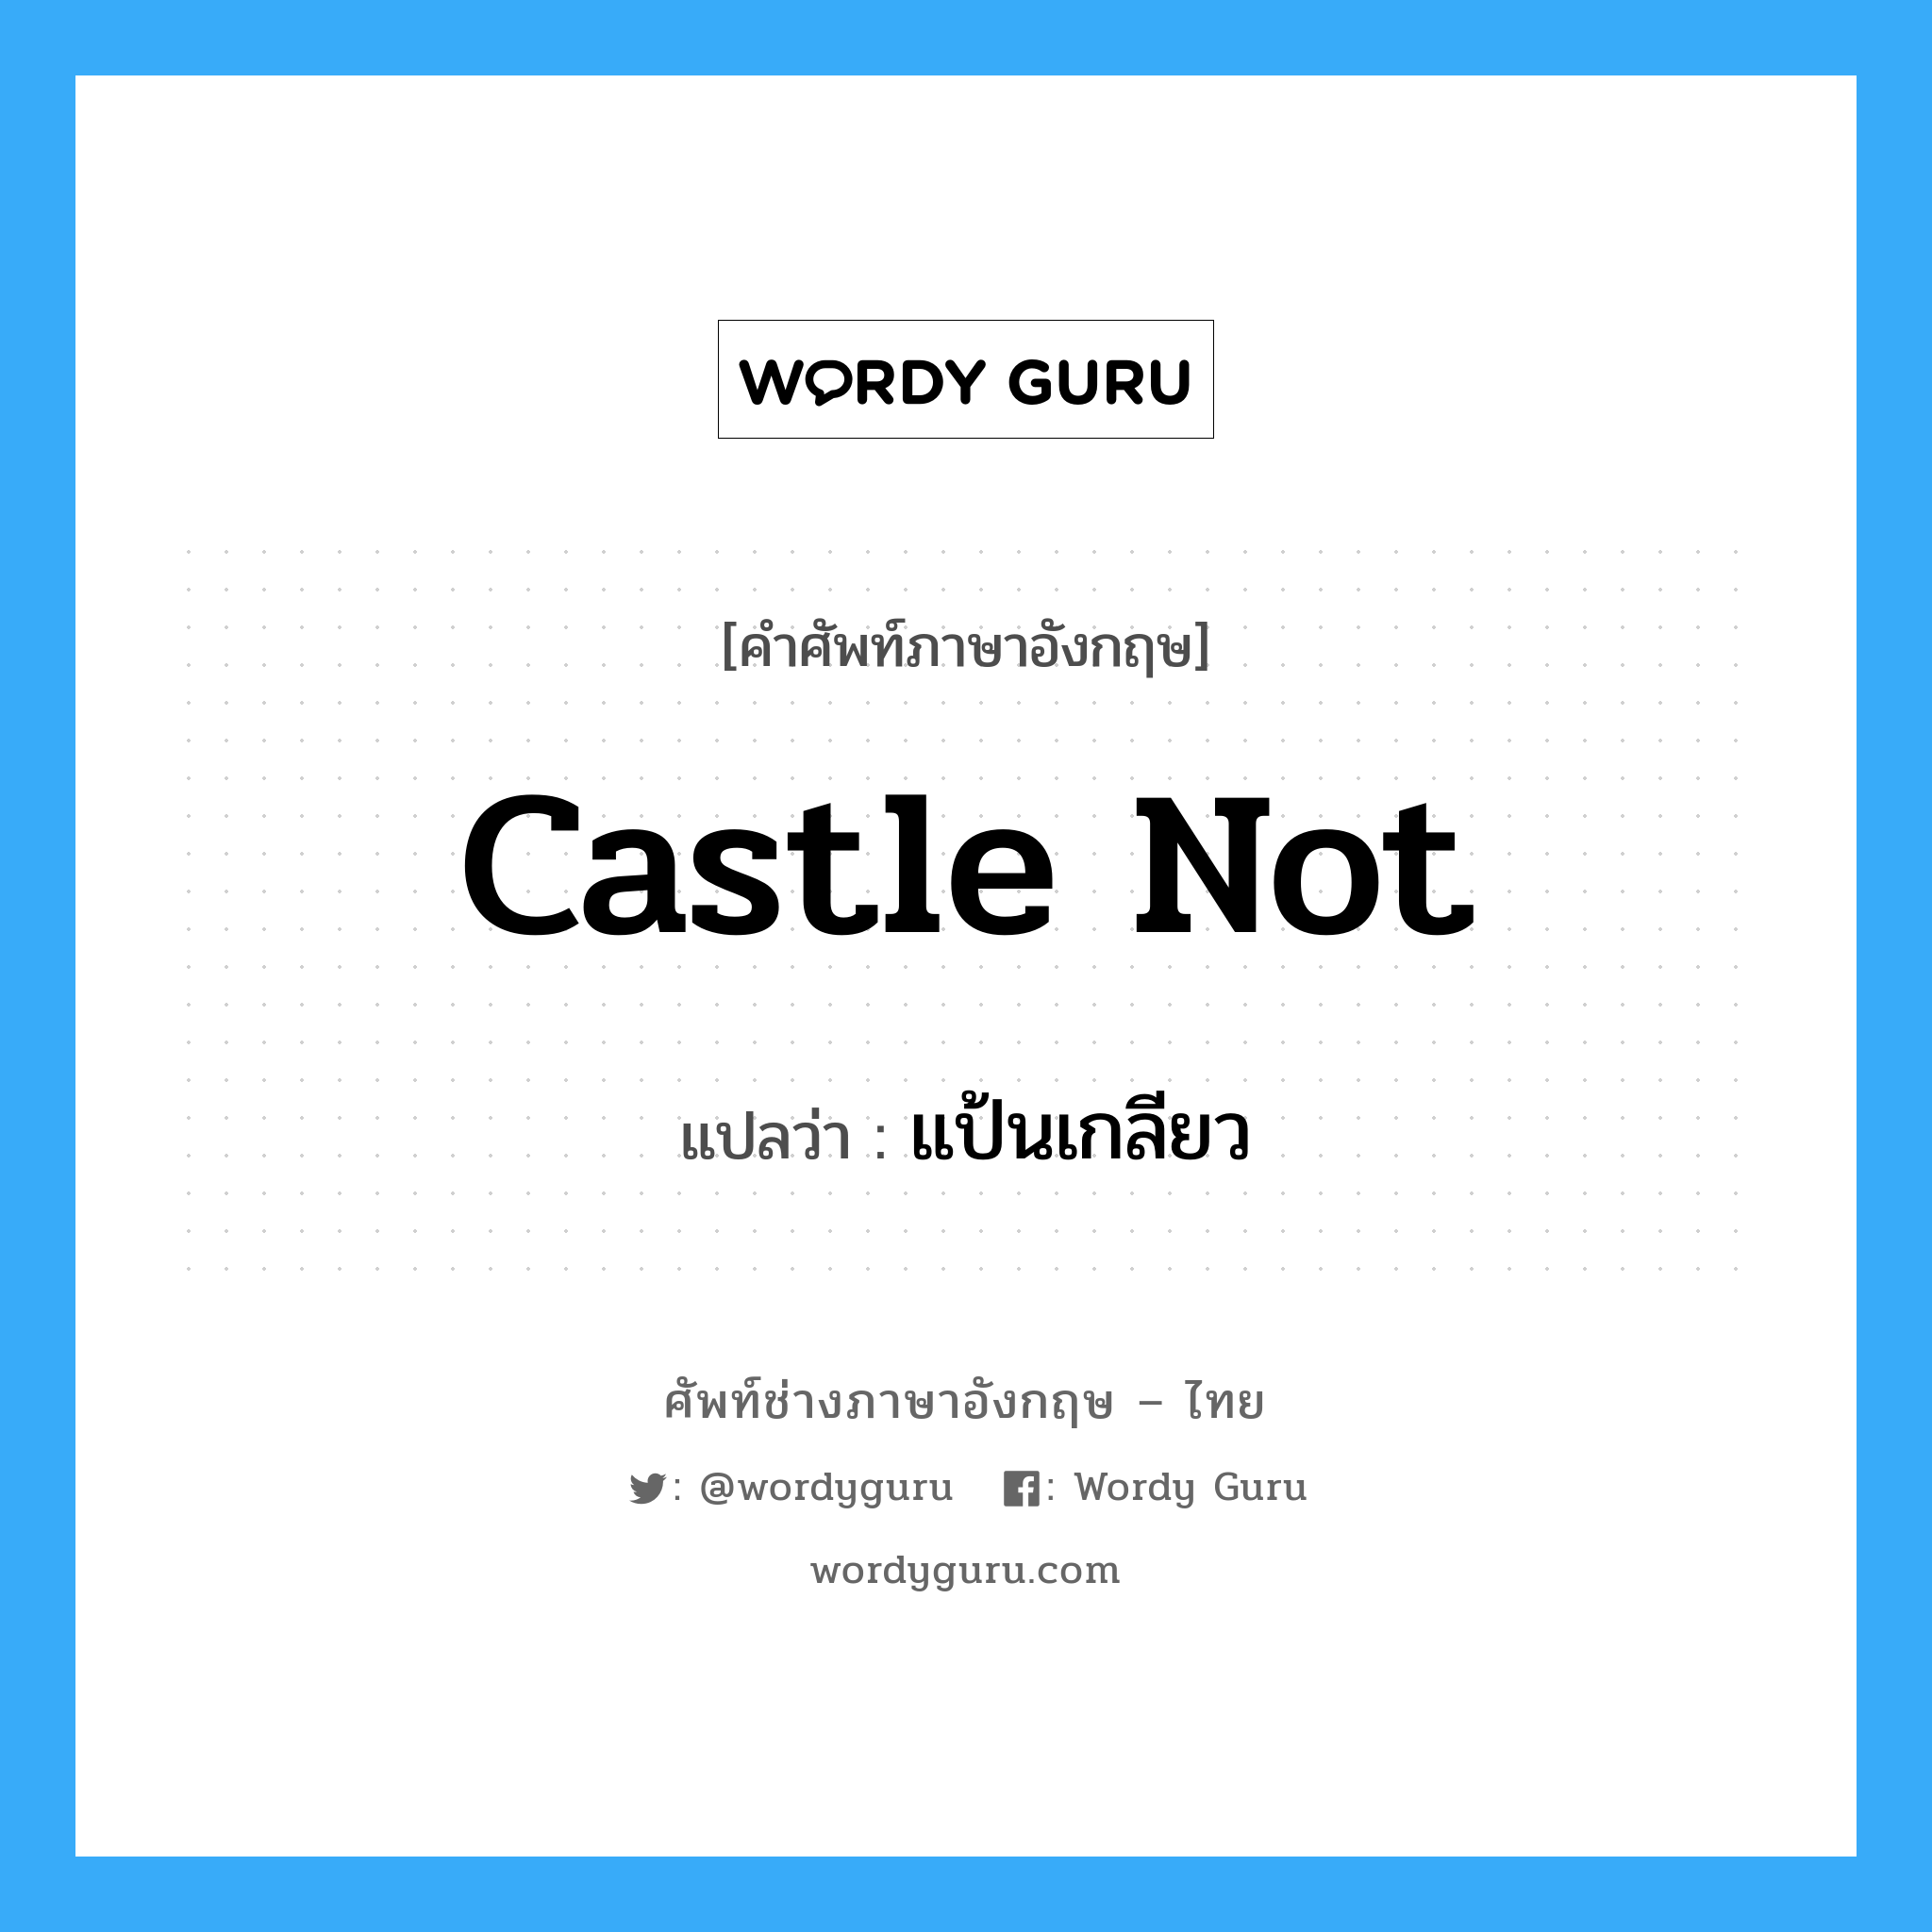 แป้นเกลียว ภาษาอังกฤษ?, คำศัพท์ช่างภาษาอังกฤษ - ไทย แป้นเกลียว คำศัพท์ภาษาอังกฤษ แป้นเกลียว แปลว่า castle not